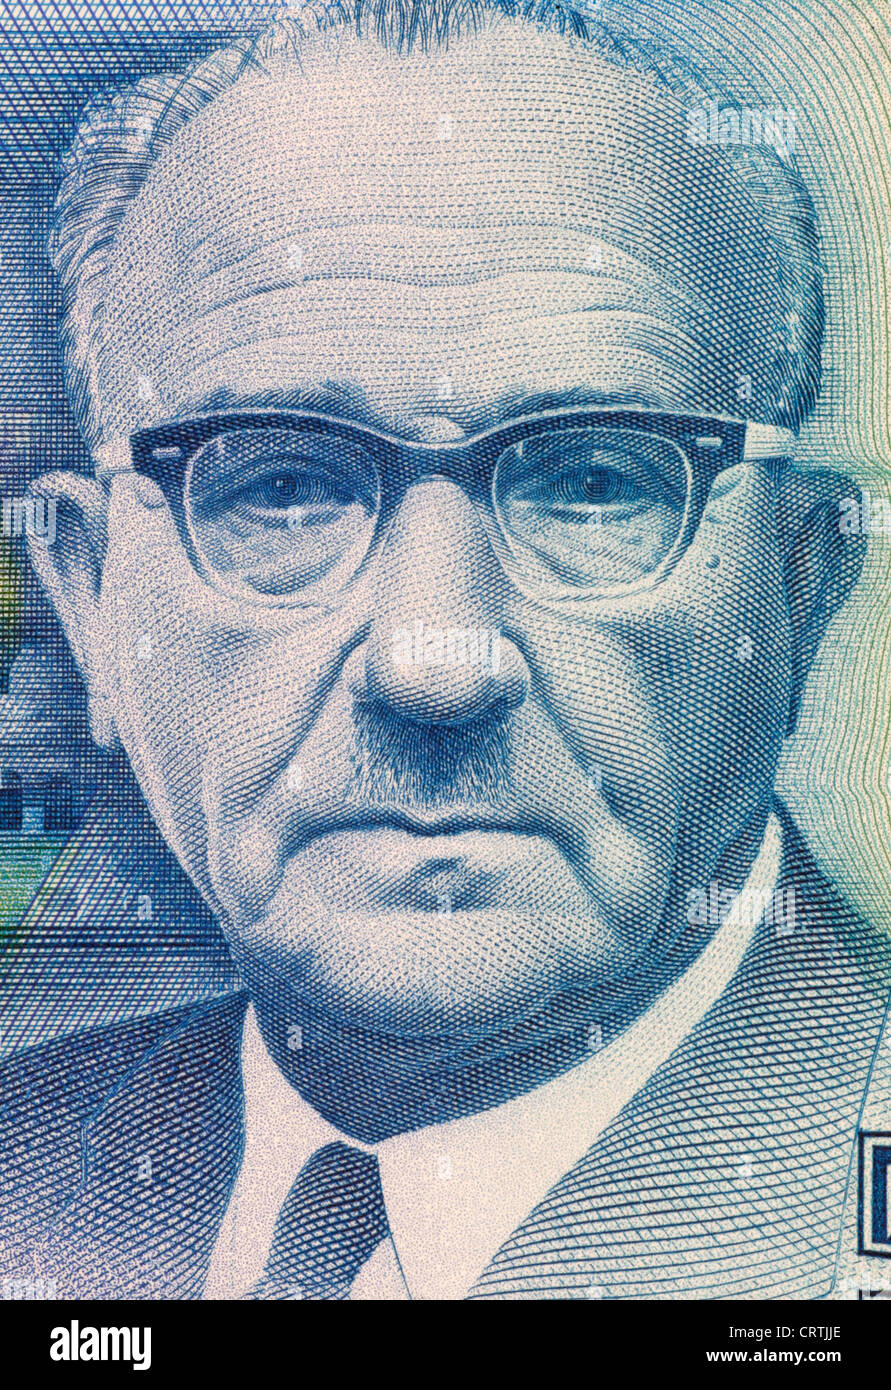 Levi Eshkol (1895-1969) sur 5 nouveaux Sheqalim 1987 euros d'Israël. Troisième Premier Ministre d'Israël au cours de 1963-1969. Banque D'Images